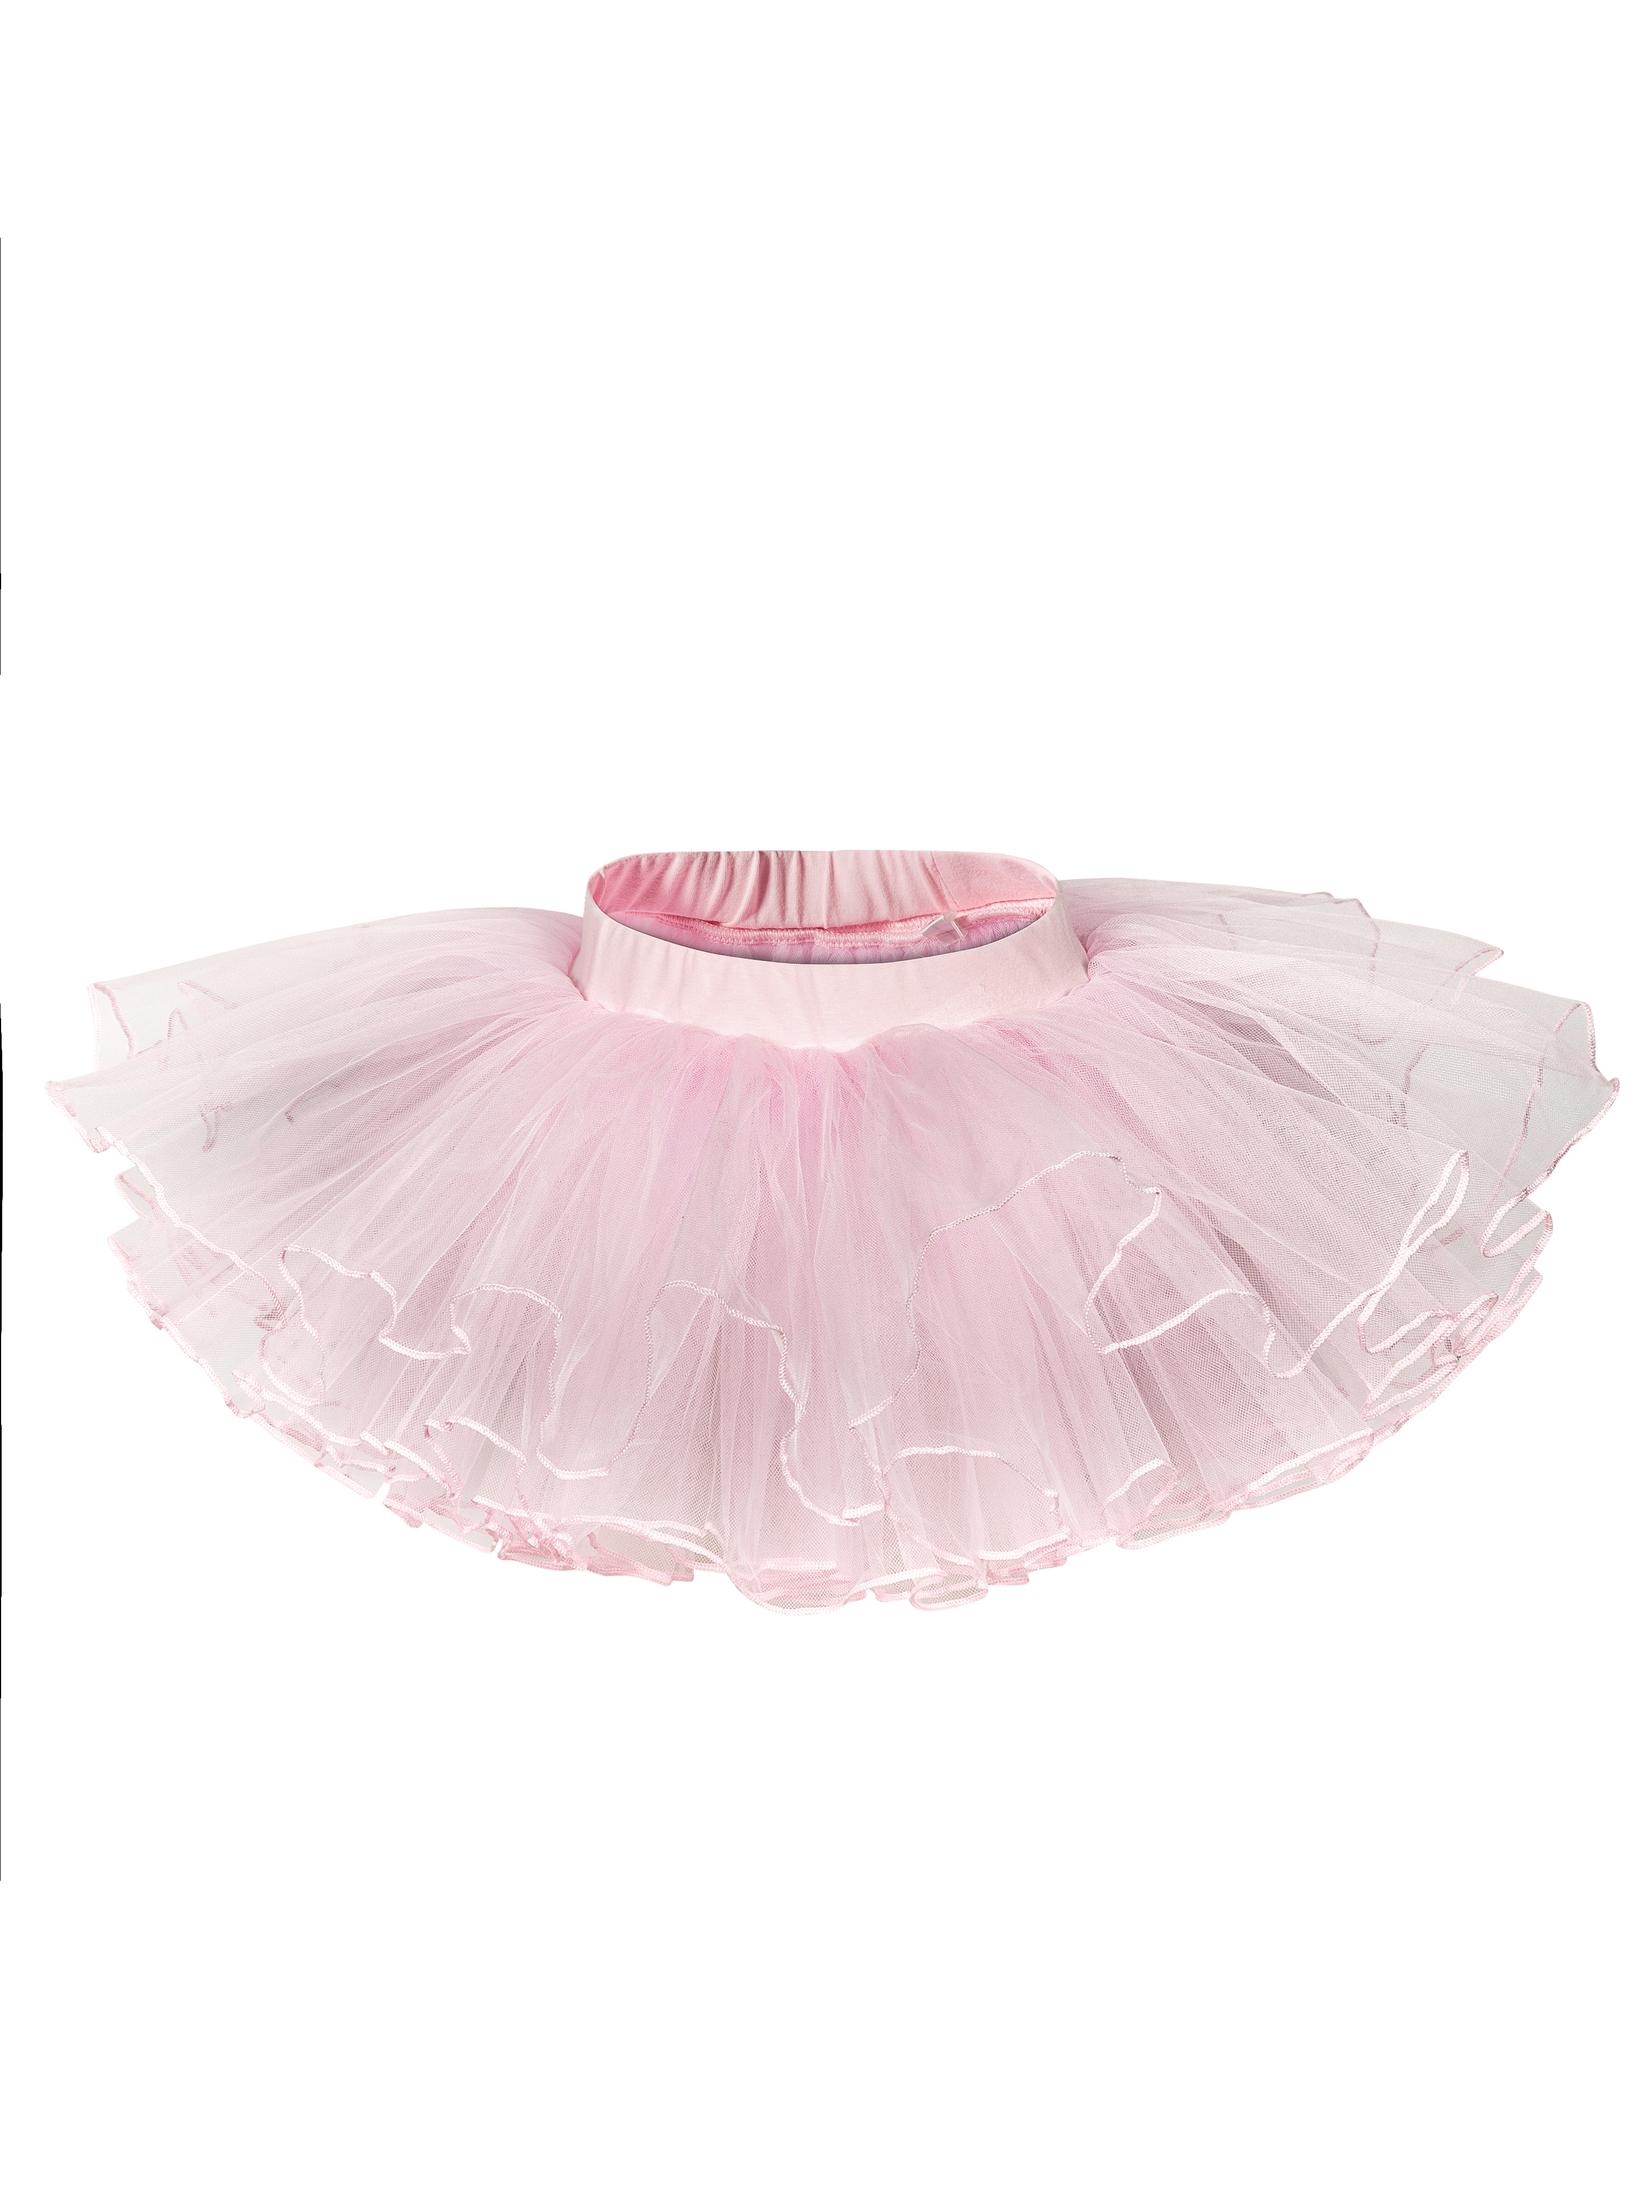 Selected image for GALA UNIQ Suknja za balet za devojčice 1305P roze